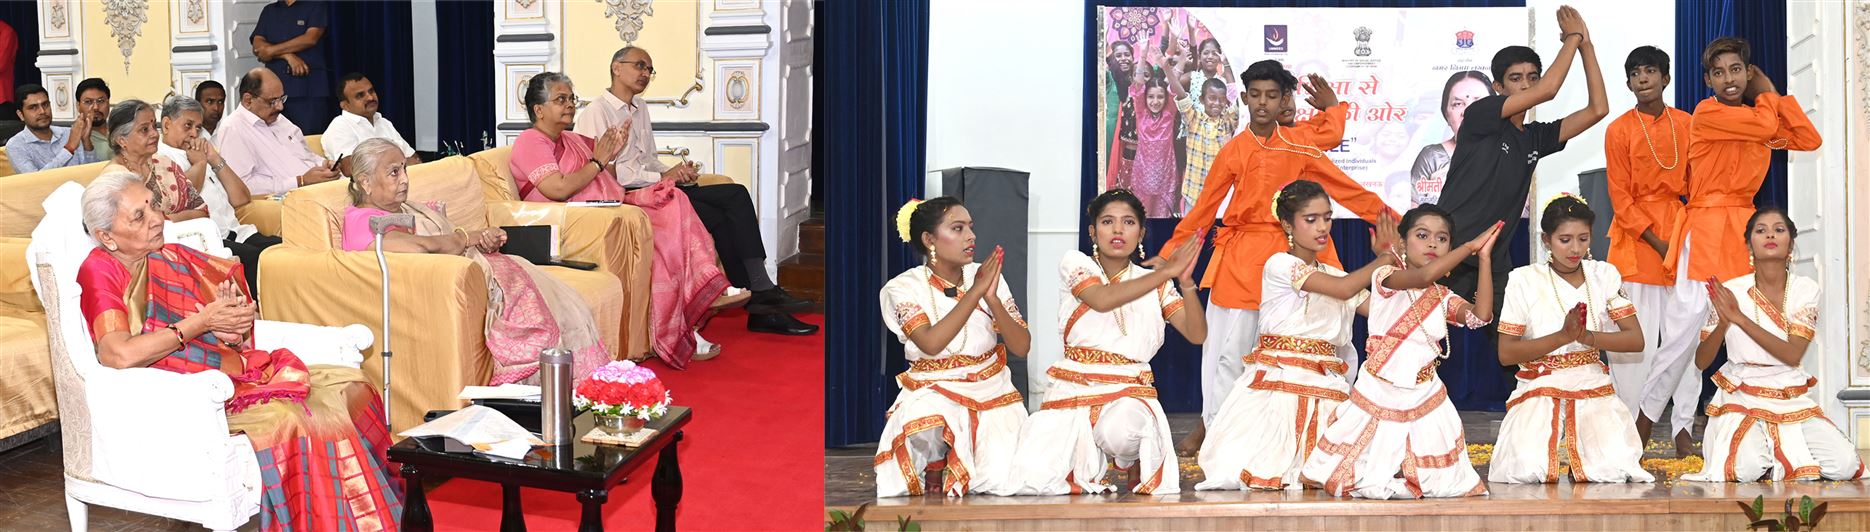 The Governor participated in the program &apos;Bhiksha Se Shiksha Ki Or&apos; organized by &apos;Ummeed&apos; organization at Raj Bhavan / राज्यपाल ने ‘उम्मीद’ संस्था द्वारा राजभवन में आयोजित ‘भिक्षा से शिक्षा की ओर’ कार्यक्रम में प्रतिभाग किया